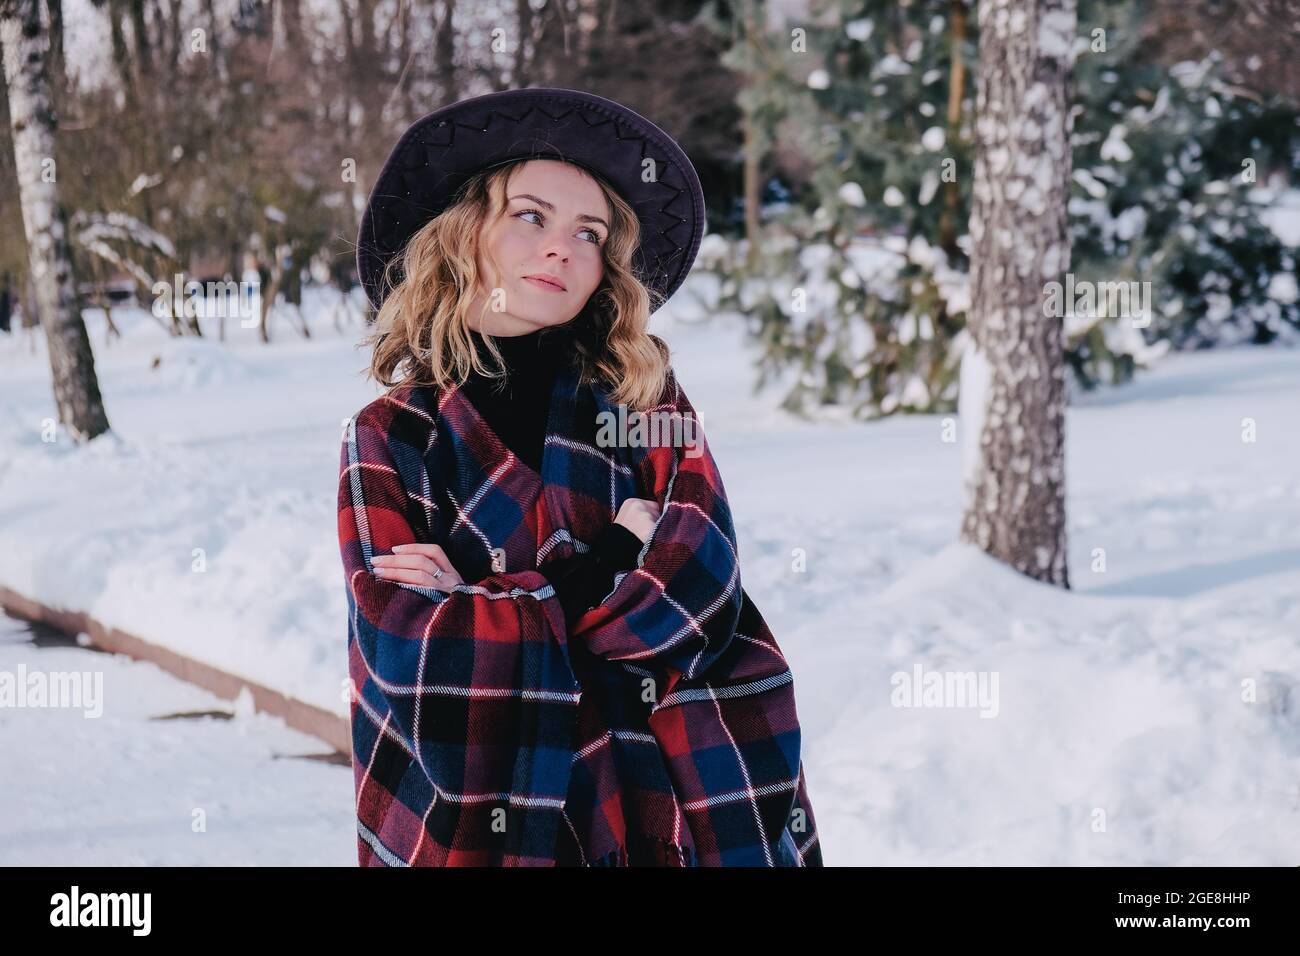 Mujer joven disfrutando del clima invernal en el parque de nieve